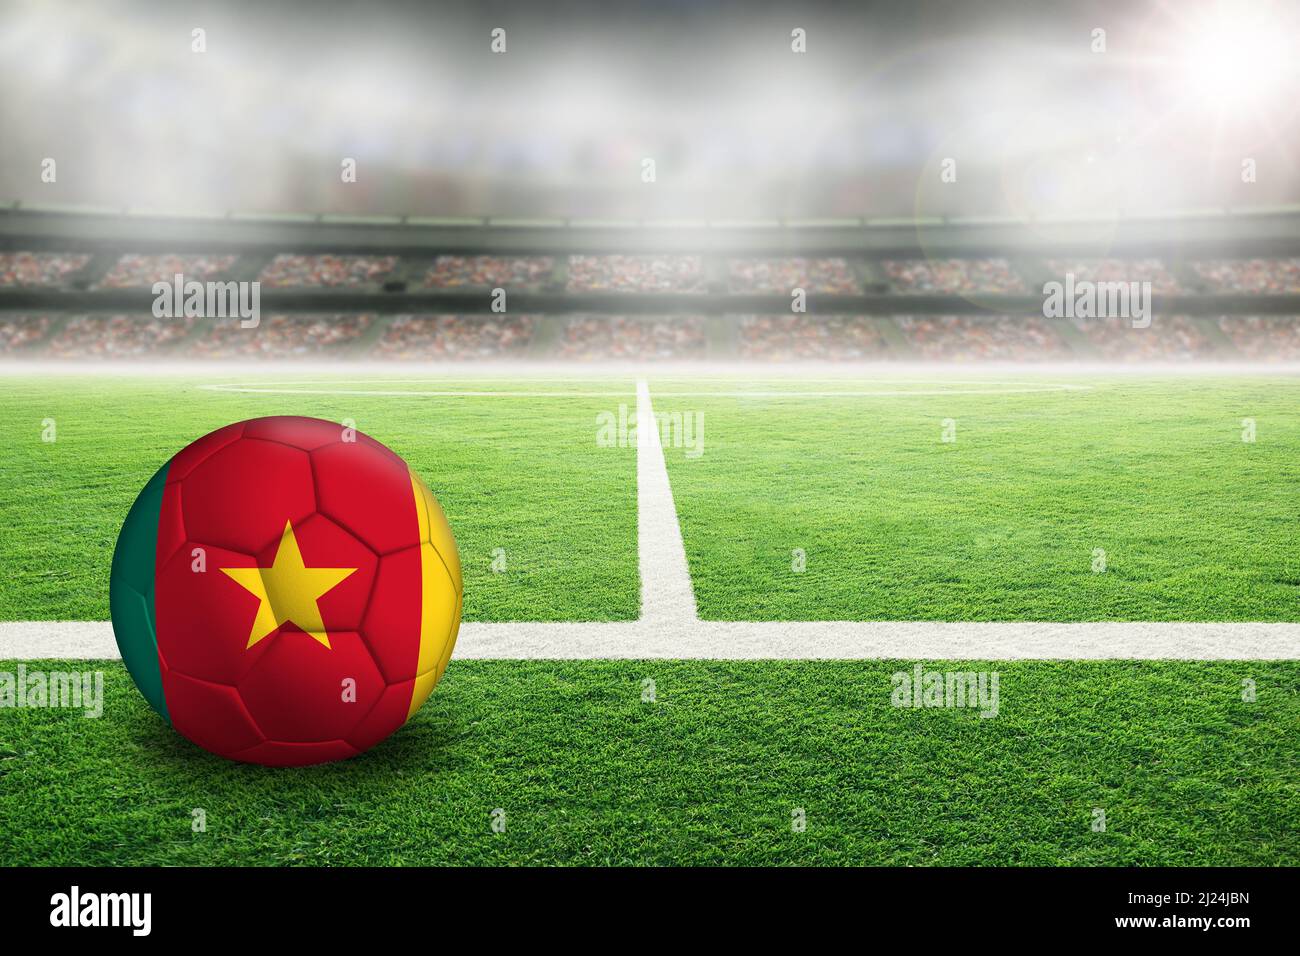 Fußball im hell erleuchteten Stadion mit der Flagge Kameruns. Konzentrieren Sie sich auf den Vordergrund und den Fußball mit geringer Schärfentiefe im Hintergrund Stockfoto